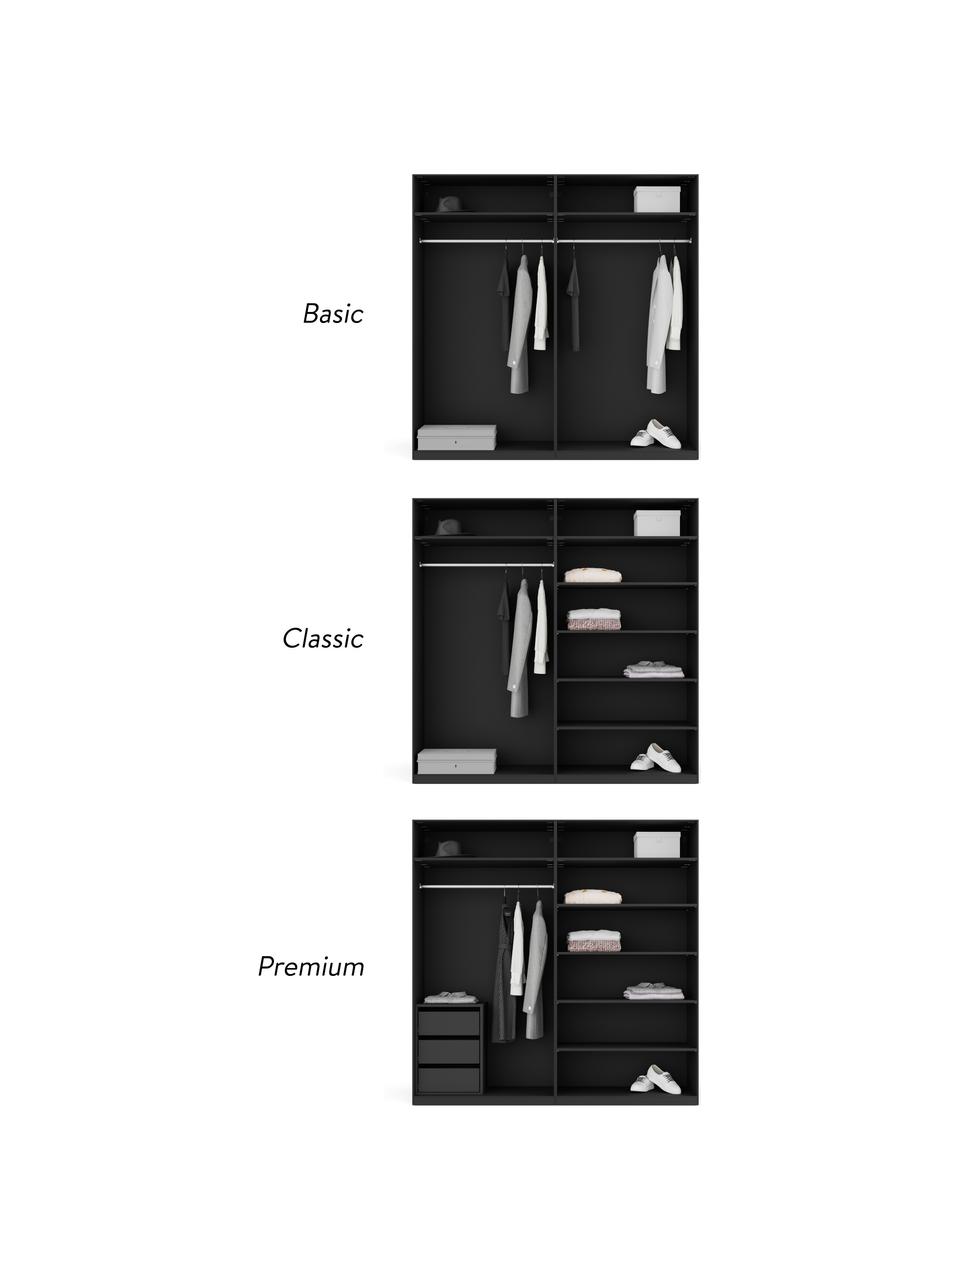 Modulárna šatníková skriňa s otočnými dverami Simone, šírka 200 cm, niekoľko variantov, Vzhľad orechového dreva, čierna, V 200 cm, Classic